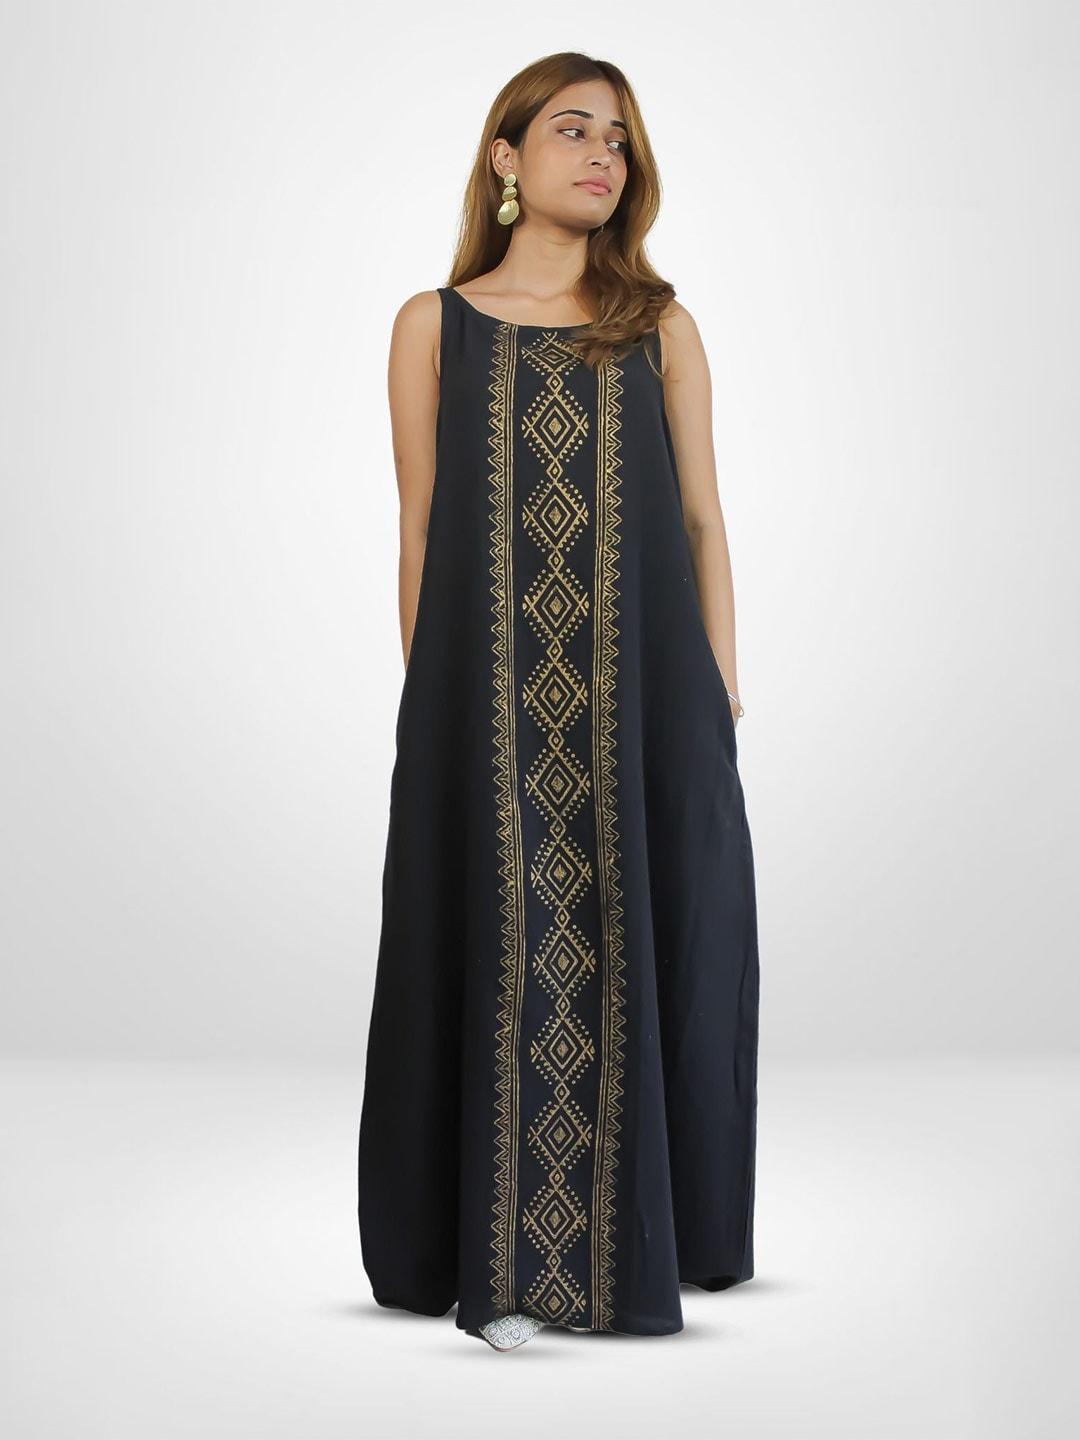 be sunset ibiza ethnic motifs printed pure cotton maxi dress